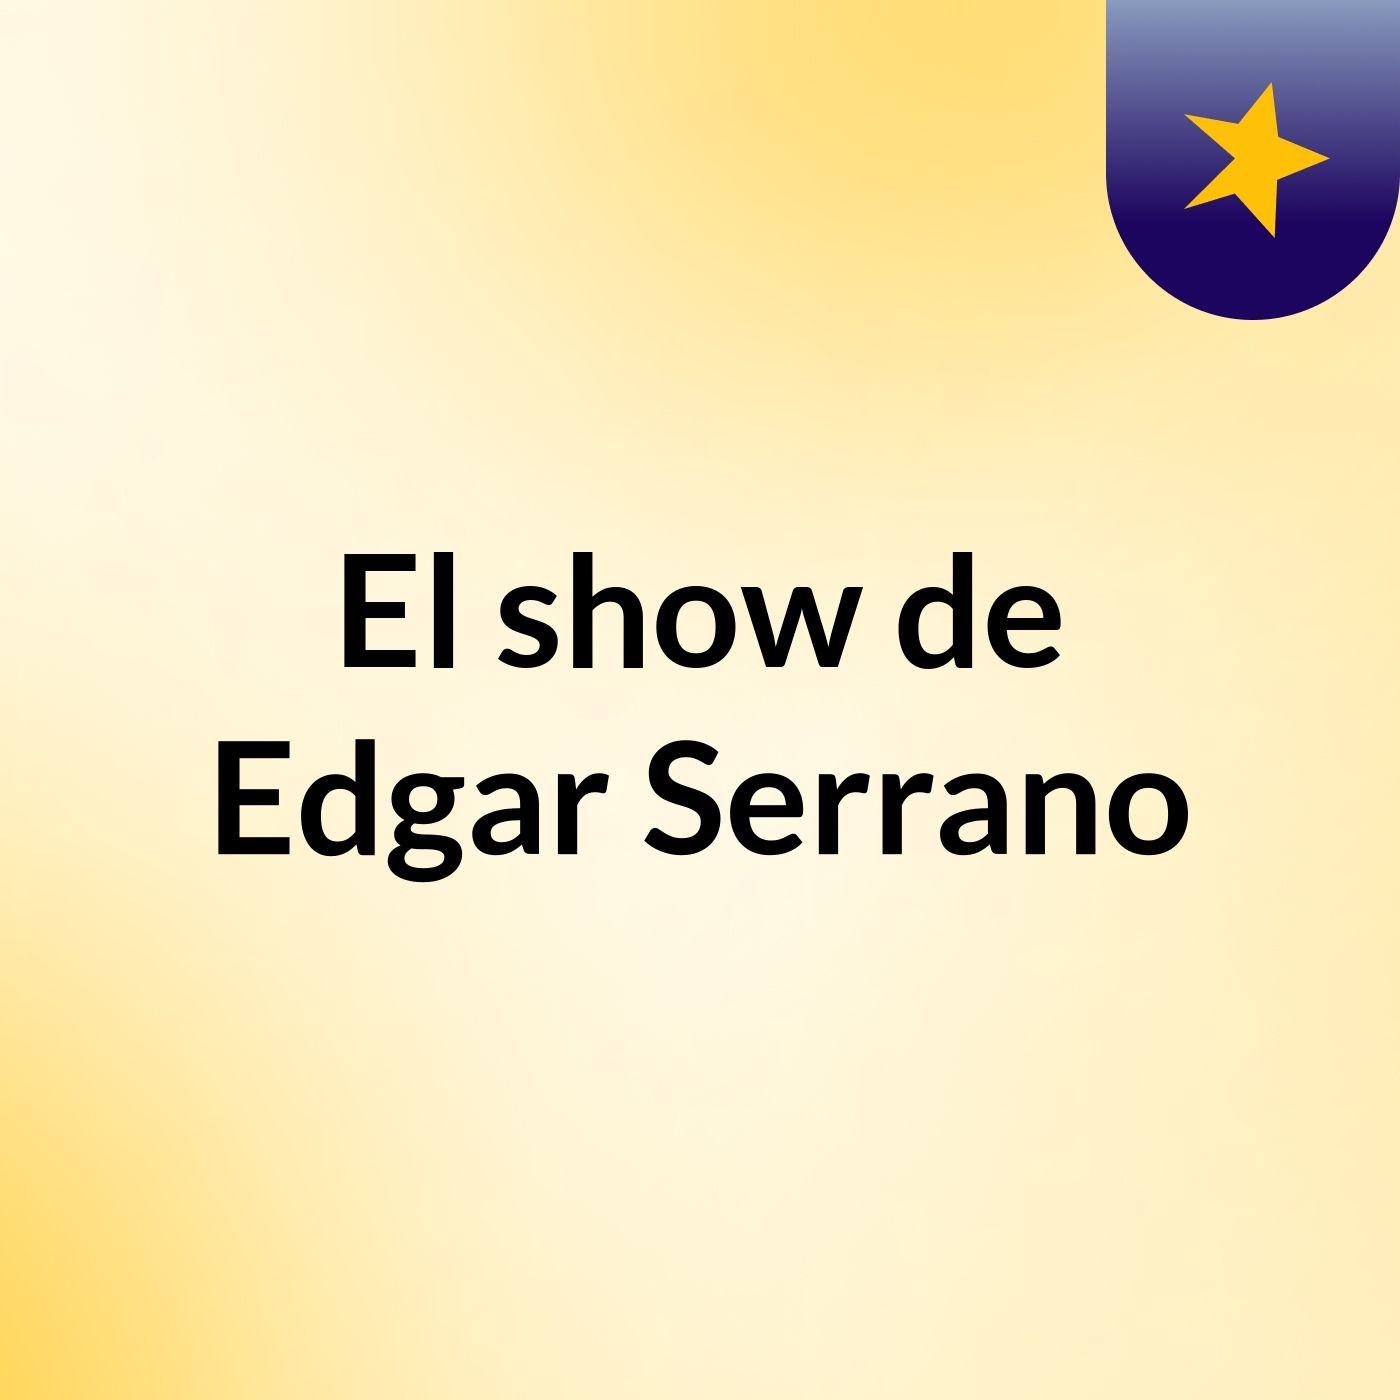 El show de Edgar Serrano